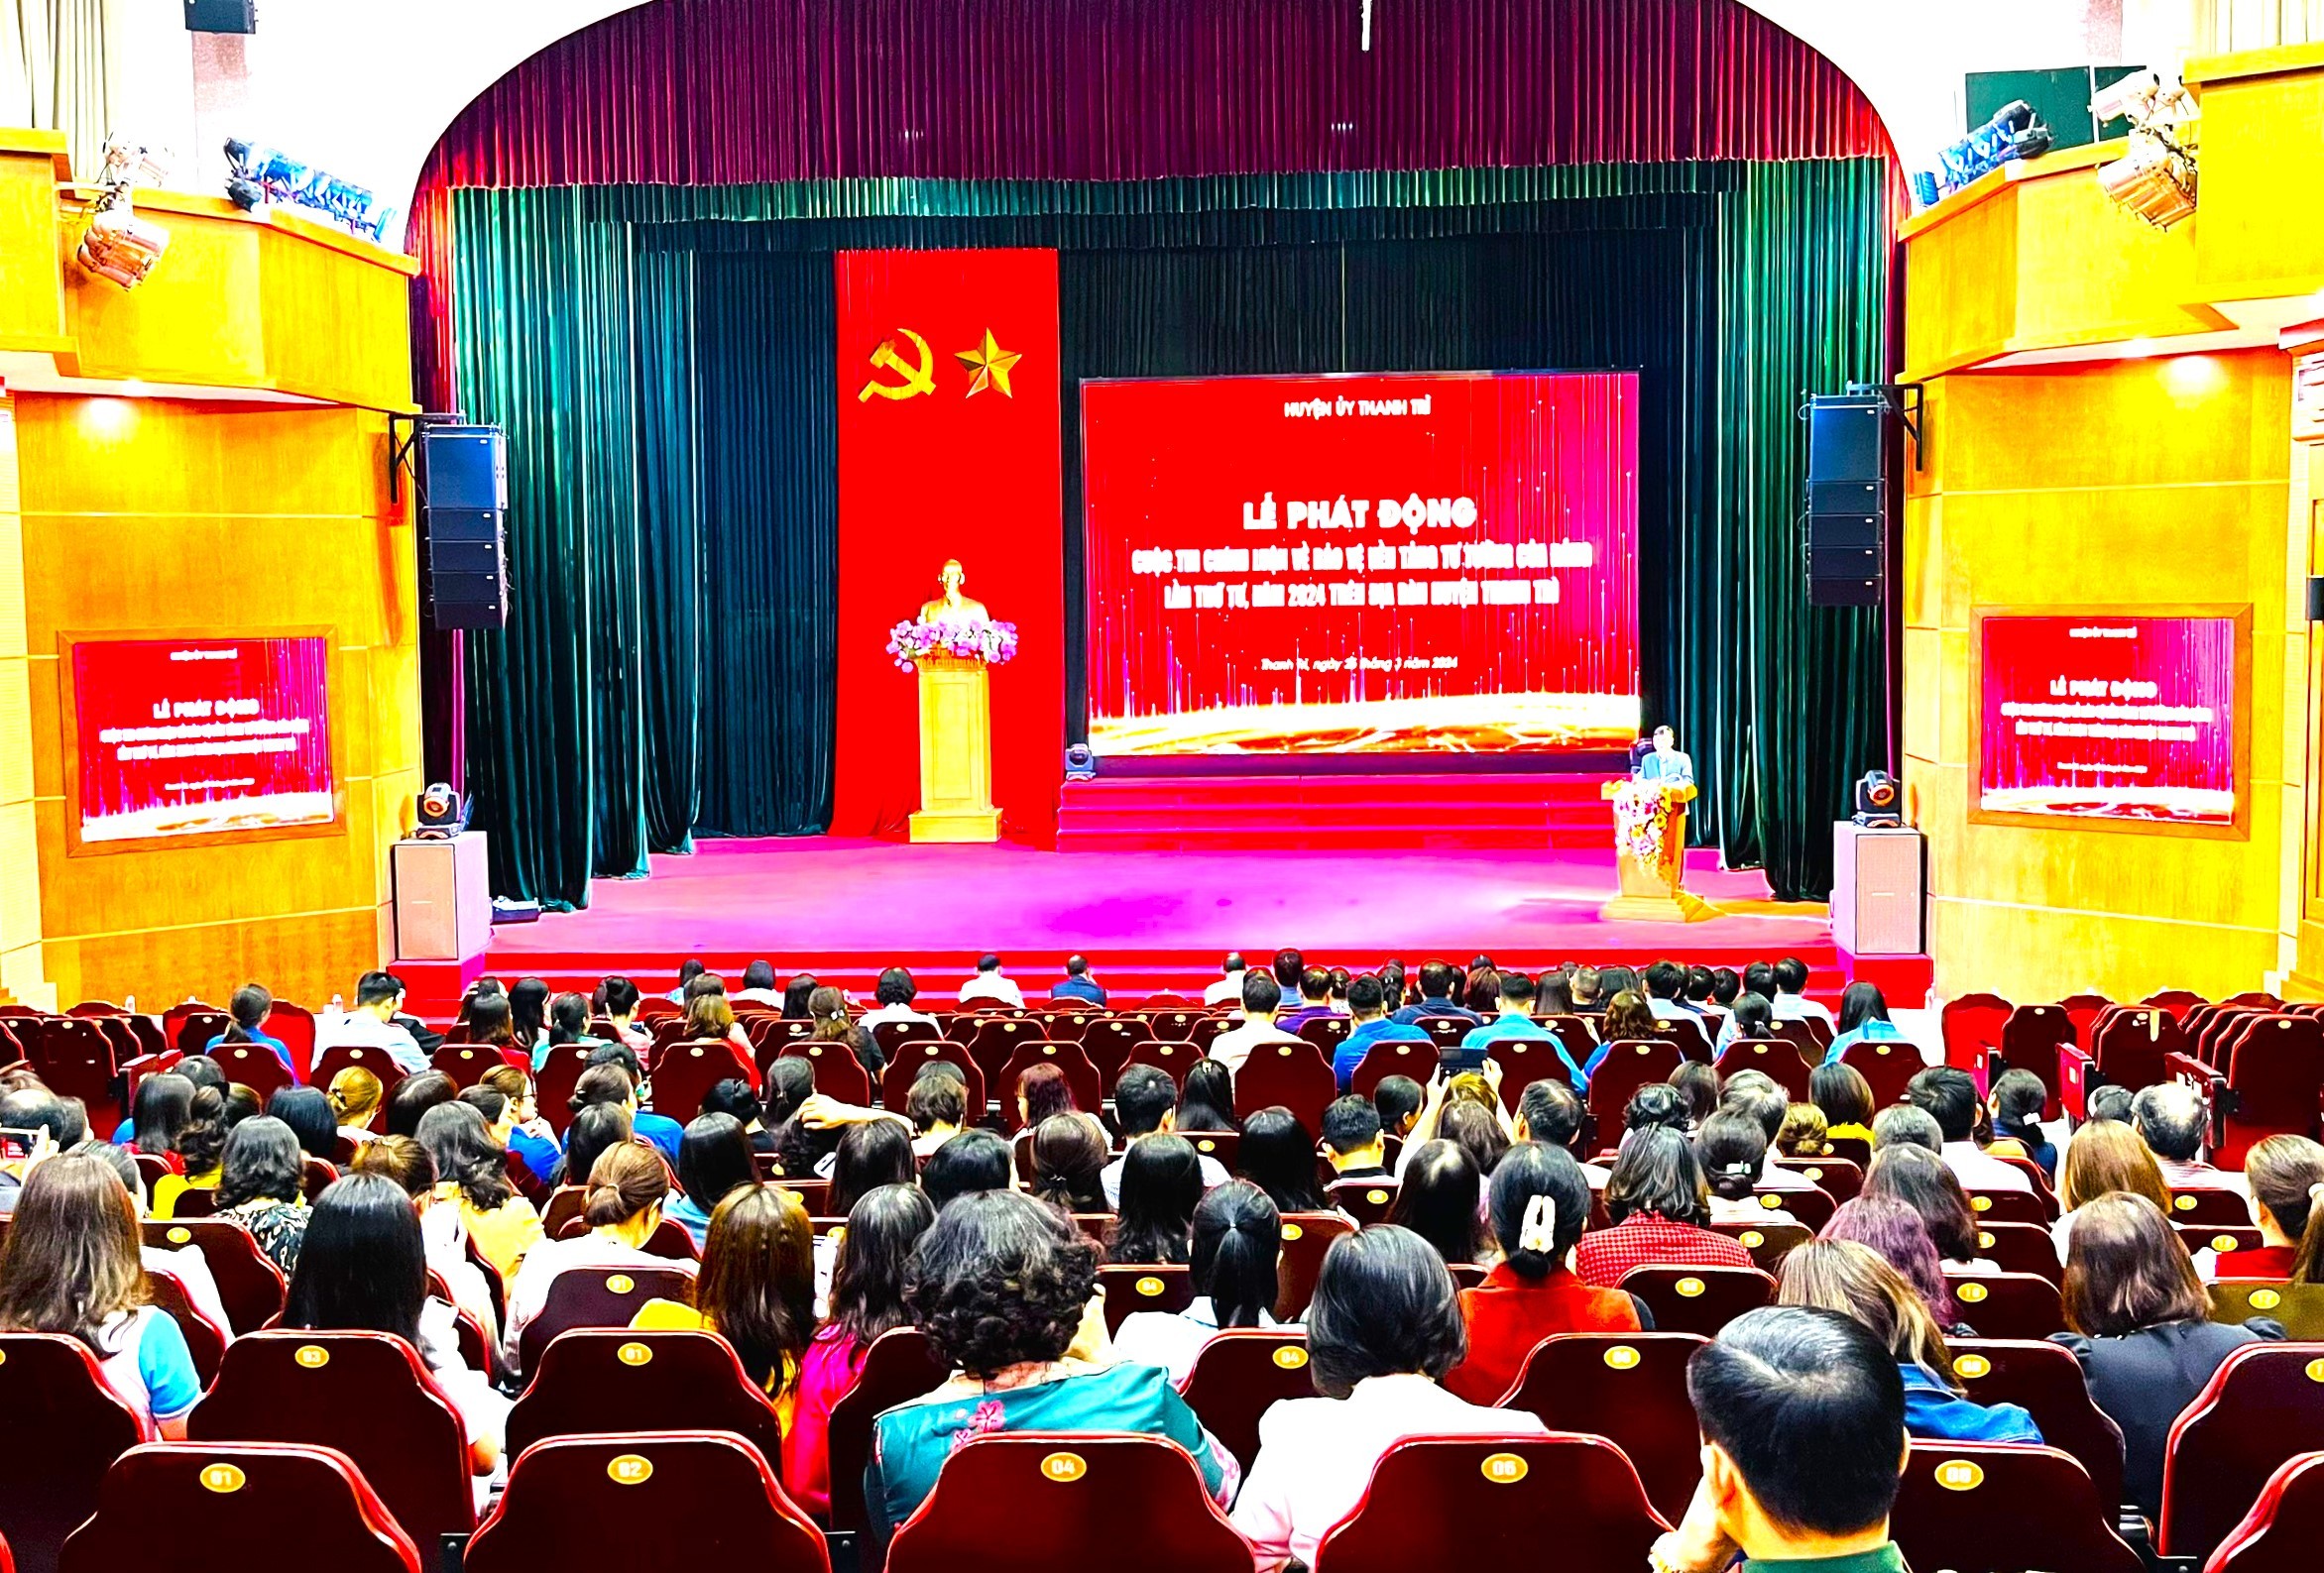 Thanh Trì: Phát động Cuộc thi chính luận về bảo vệ nền tảng tư tưởng của Đảng